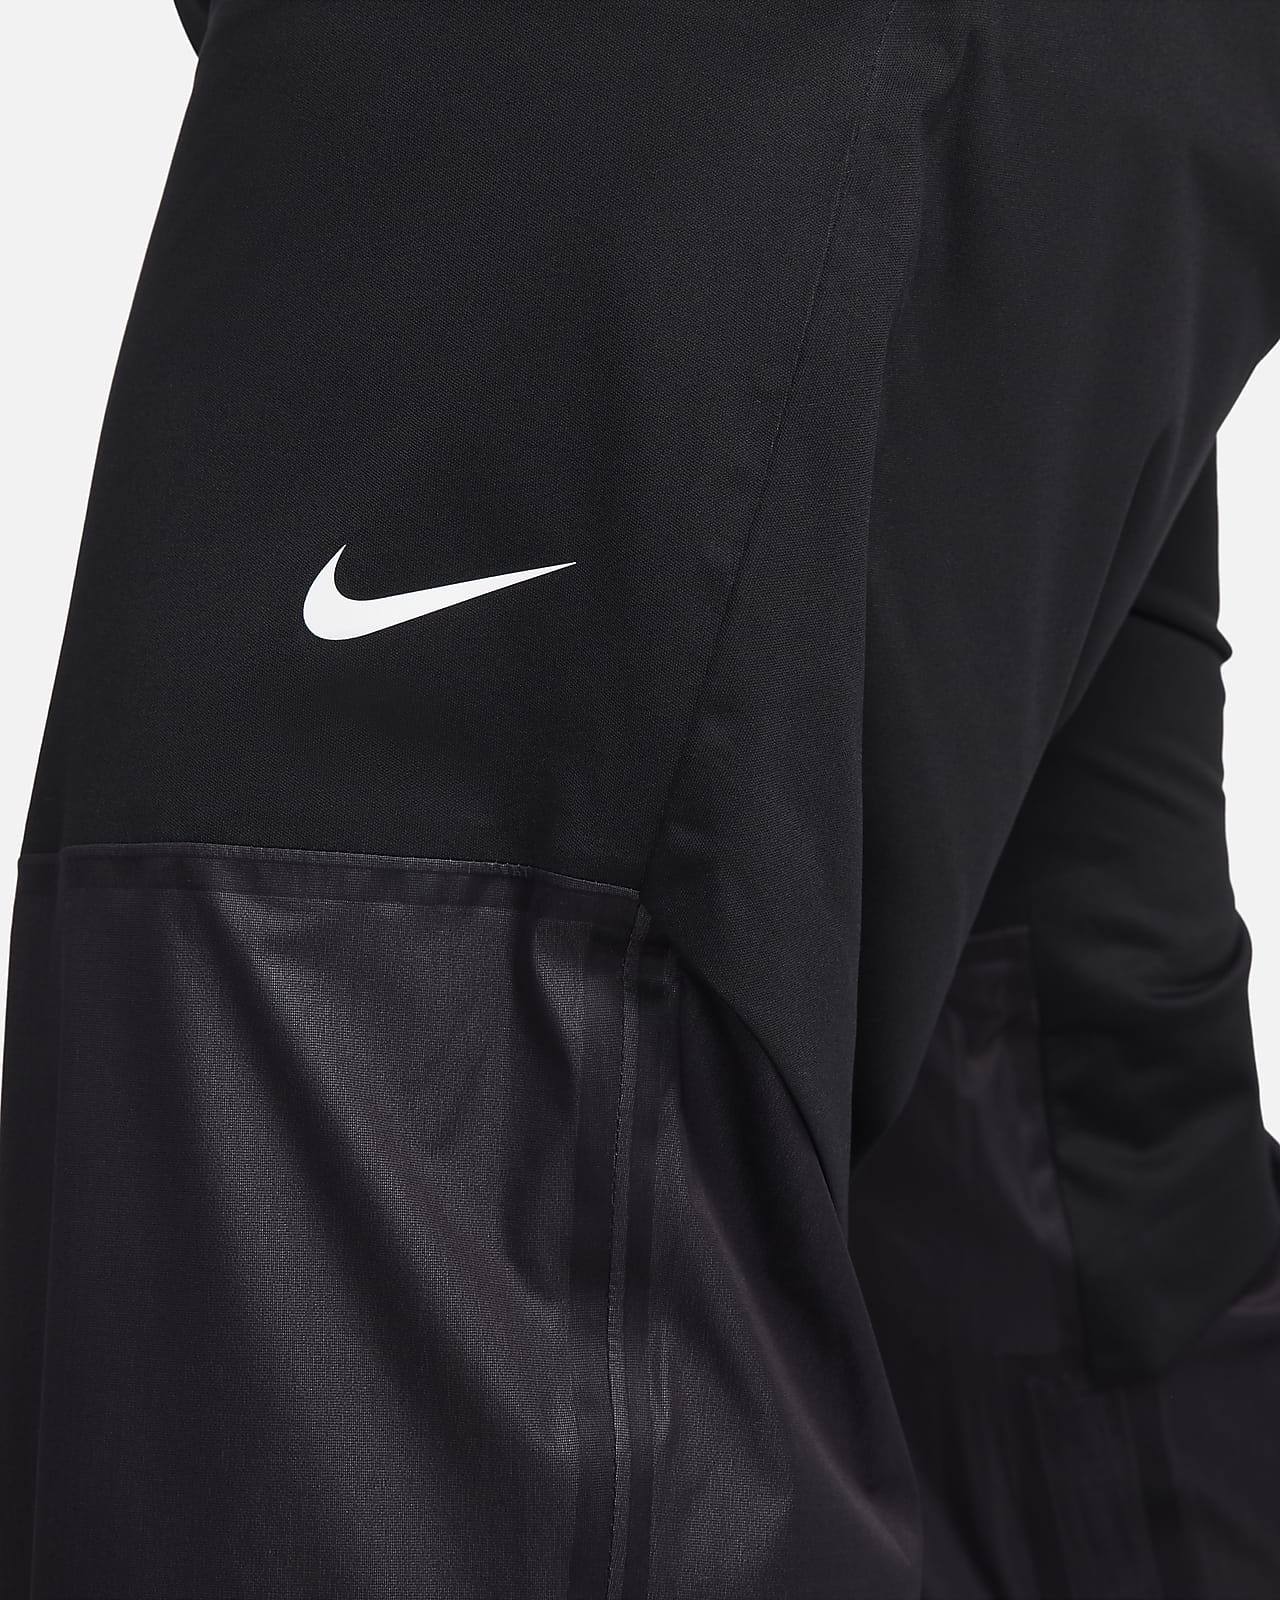 høj Misforstå blotte Nike Storm-FIT ADV-golfbukser til mænd. Nike DK